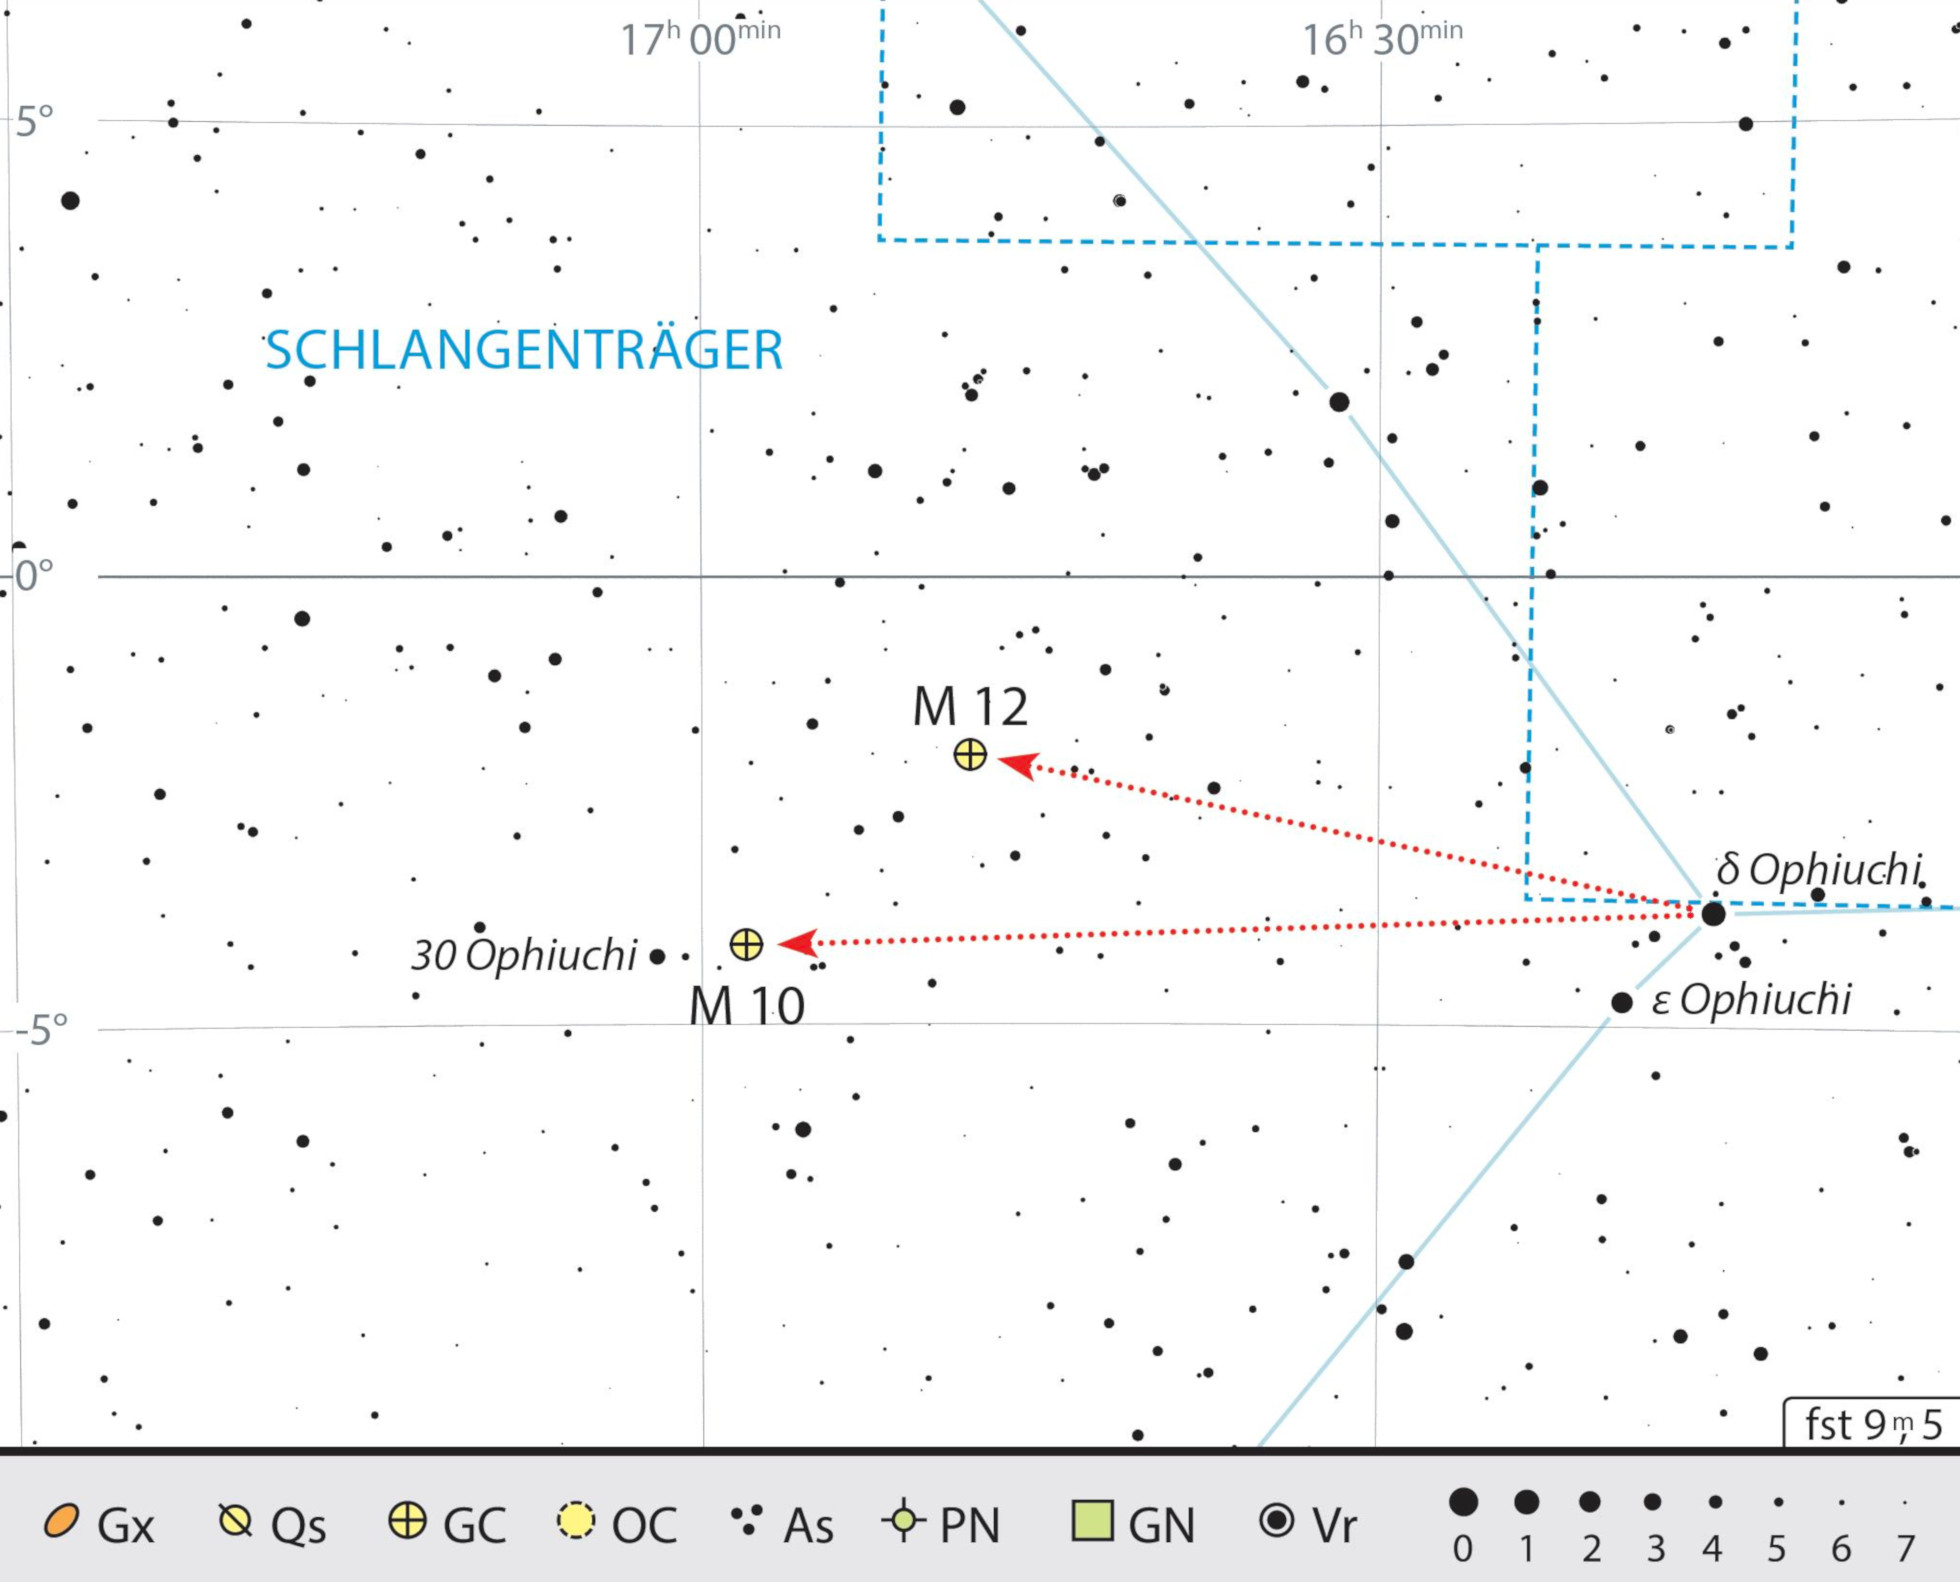 Mappa celeste per i due ammassi globulari M10 e M12 nella costellazione di Ofiuco. J. Scholten